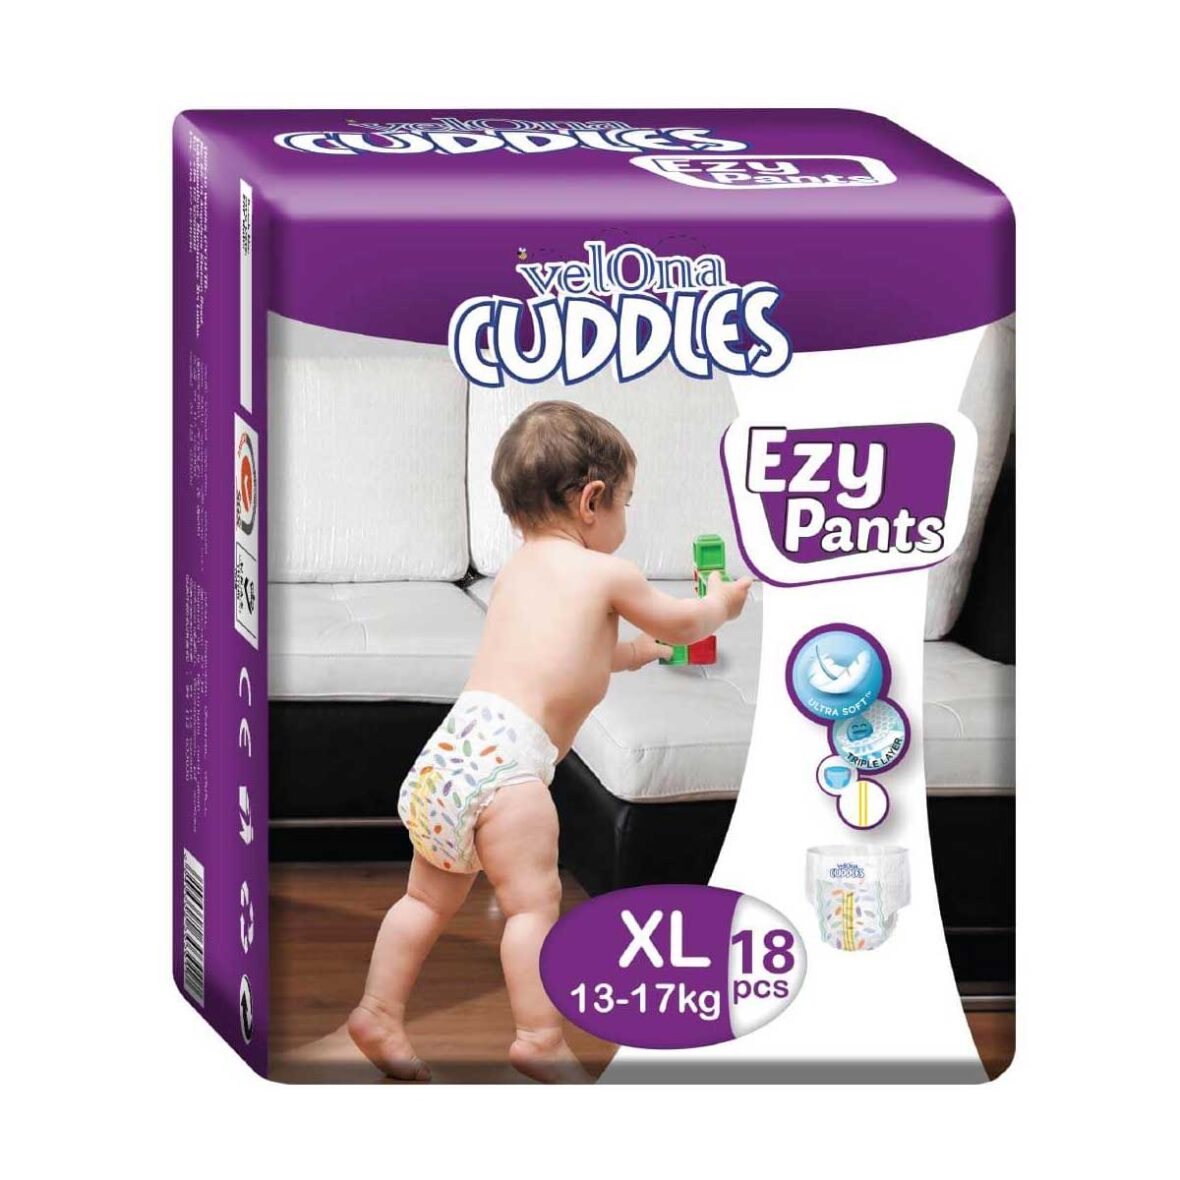 Velona Cuddles XL Ezy Pant 18Pcs (Pant Type)